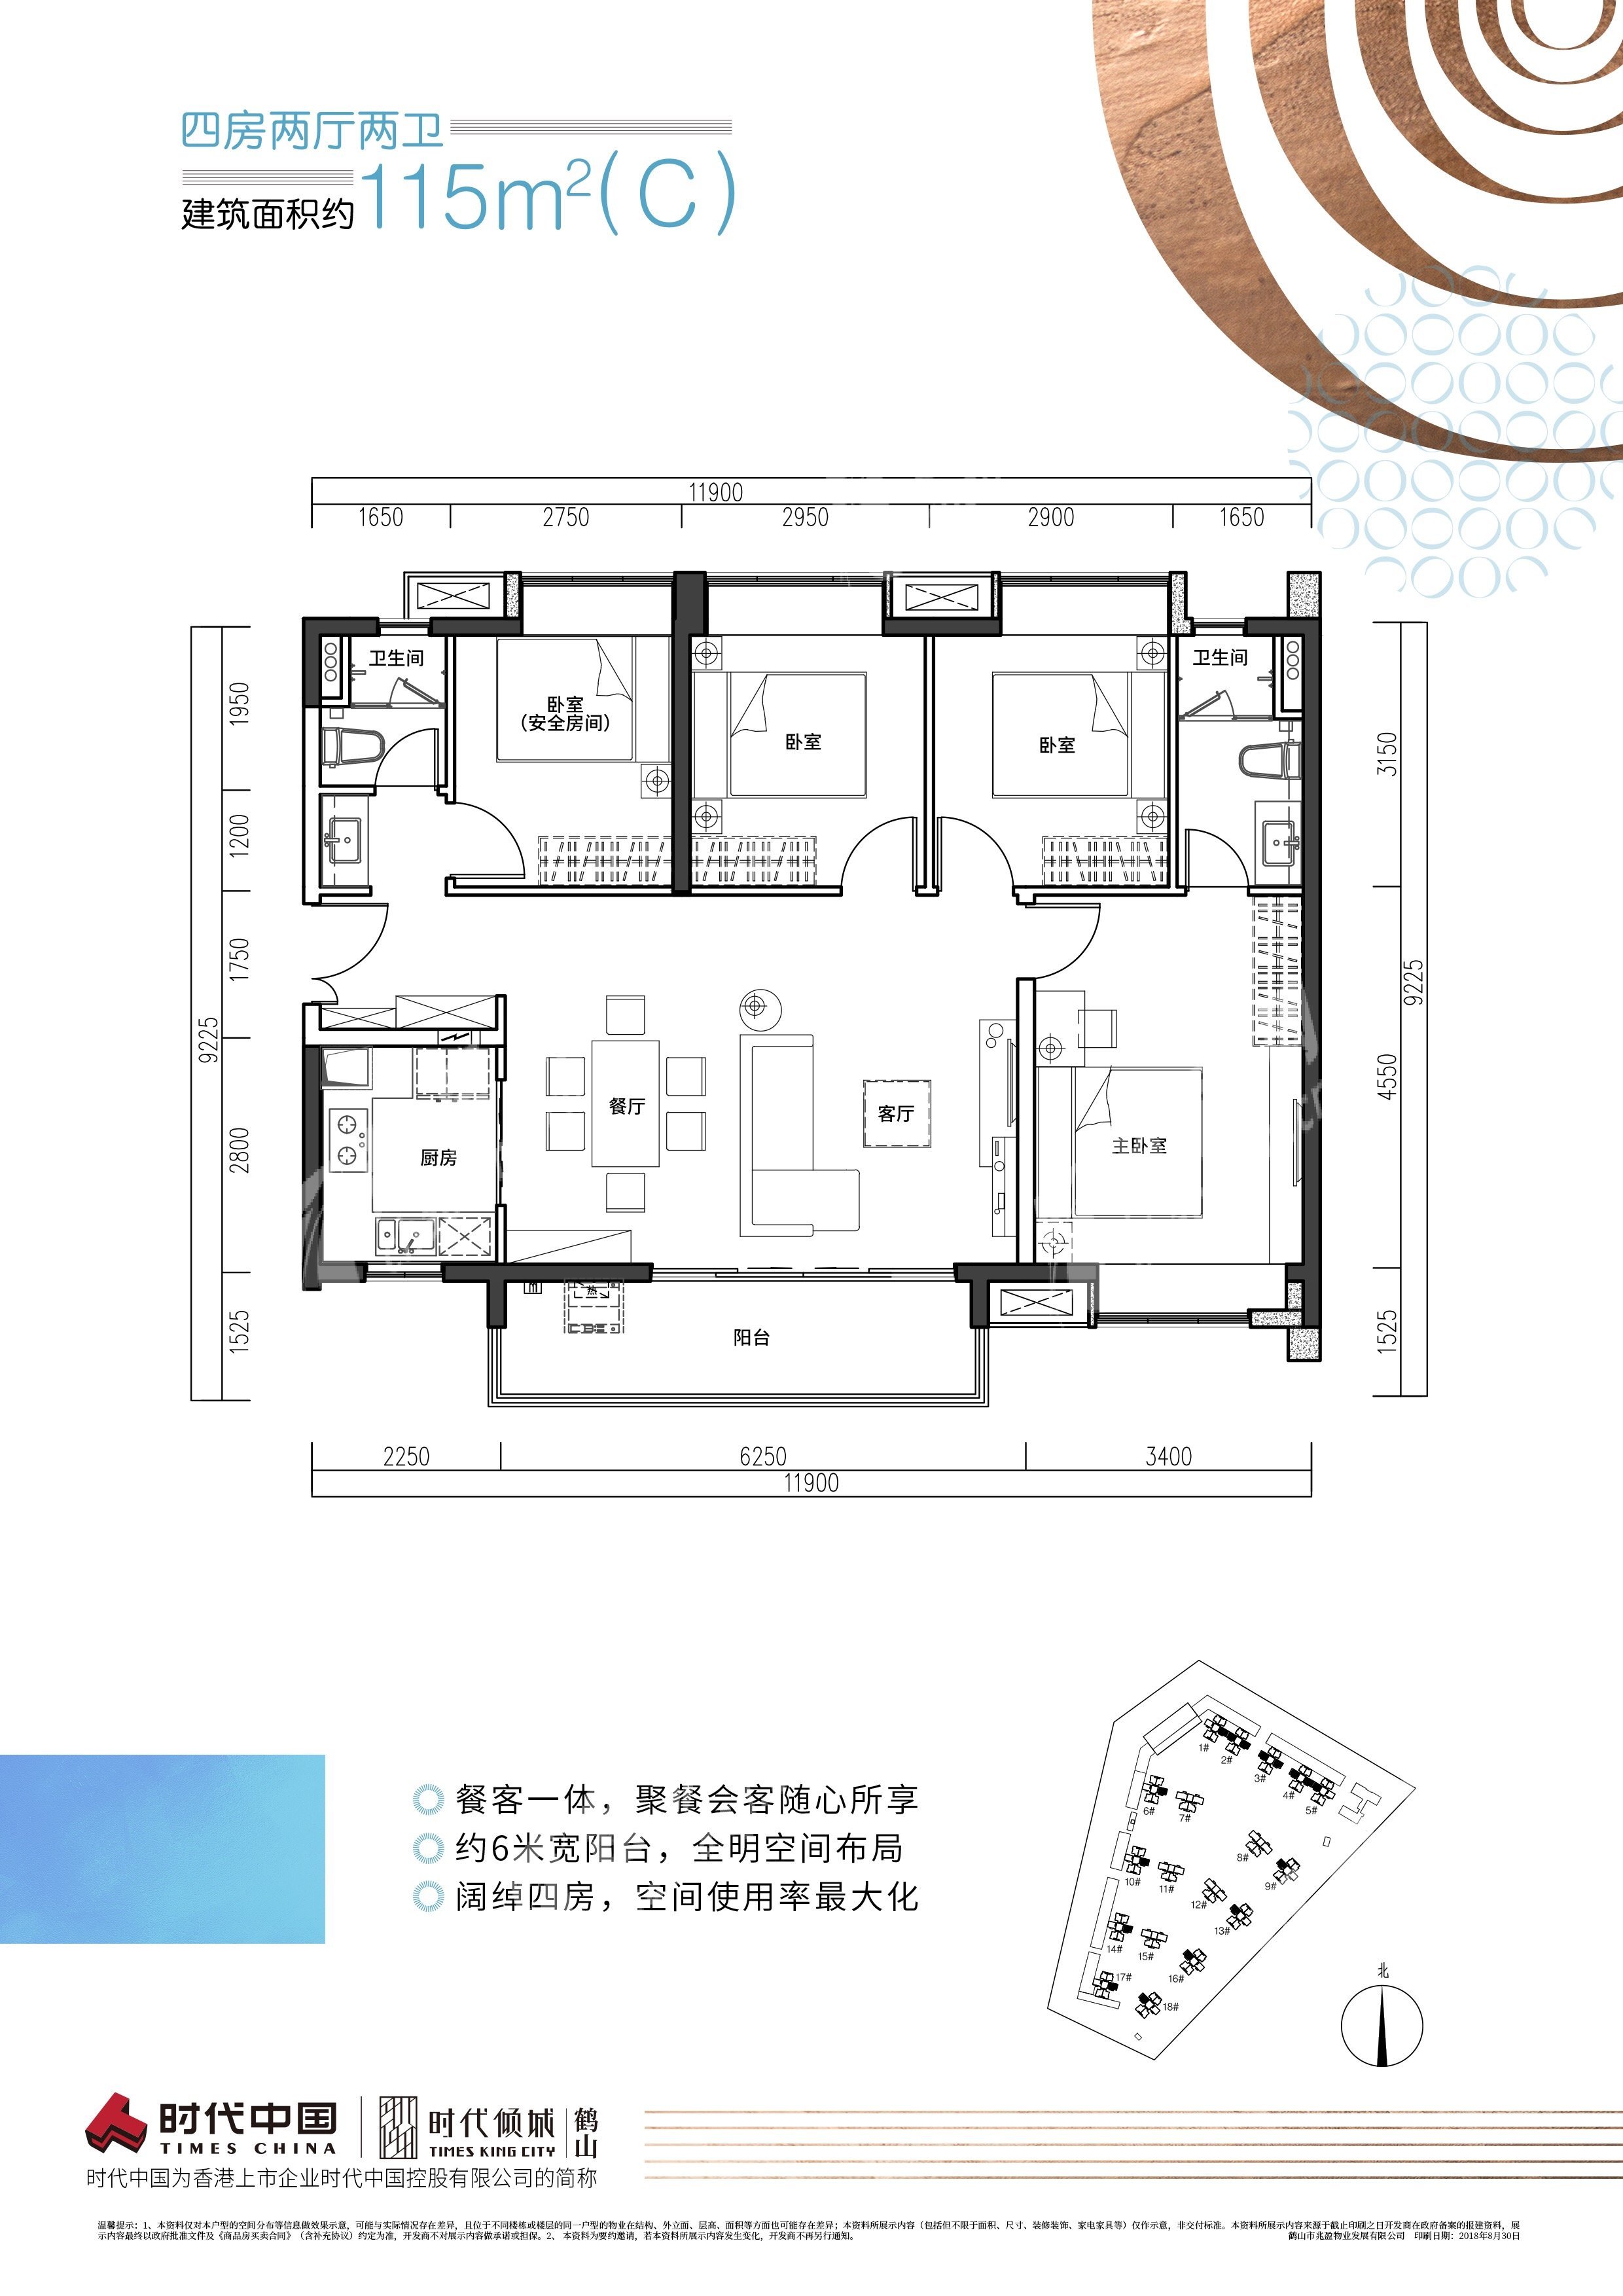 鶴山時代傾城（新房）新房115（C）戶型 4室2廳2衛戶型圖